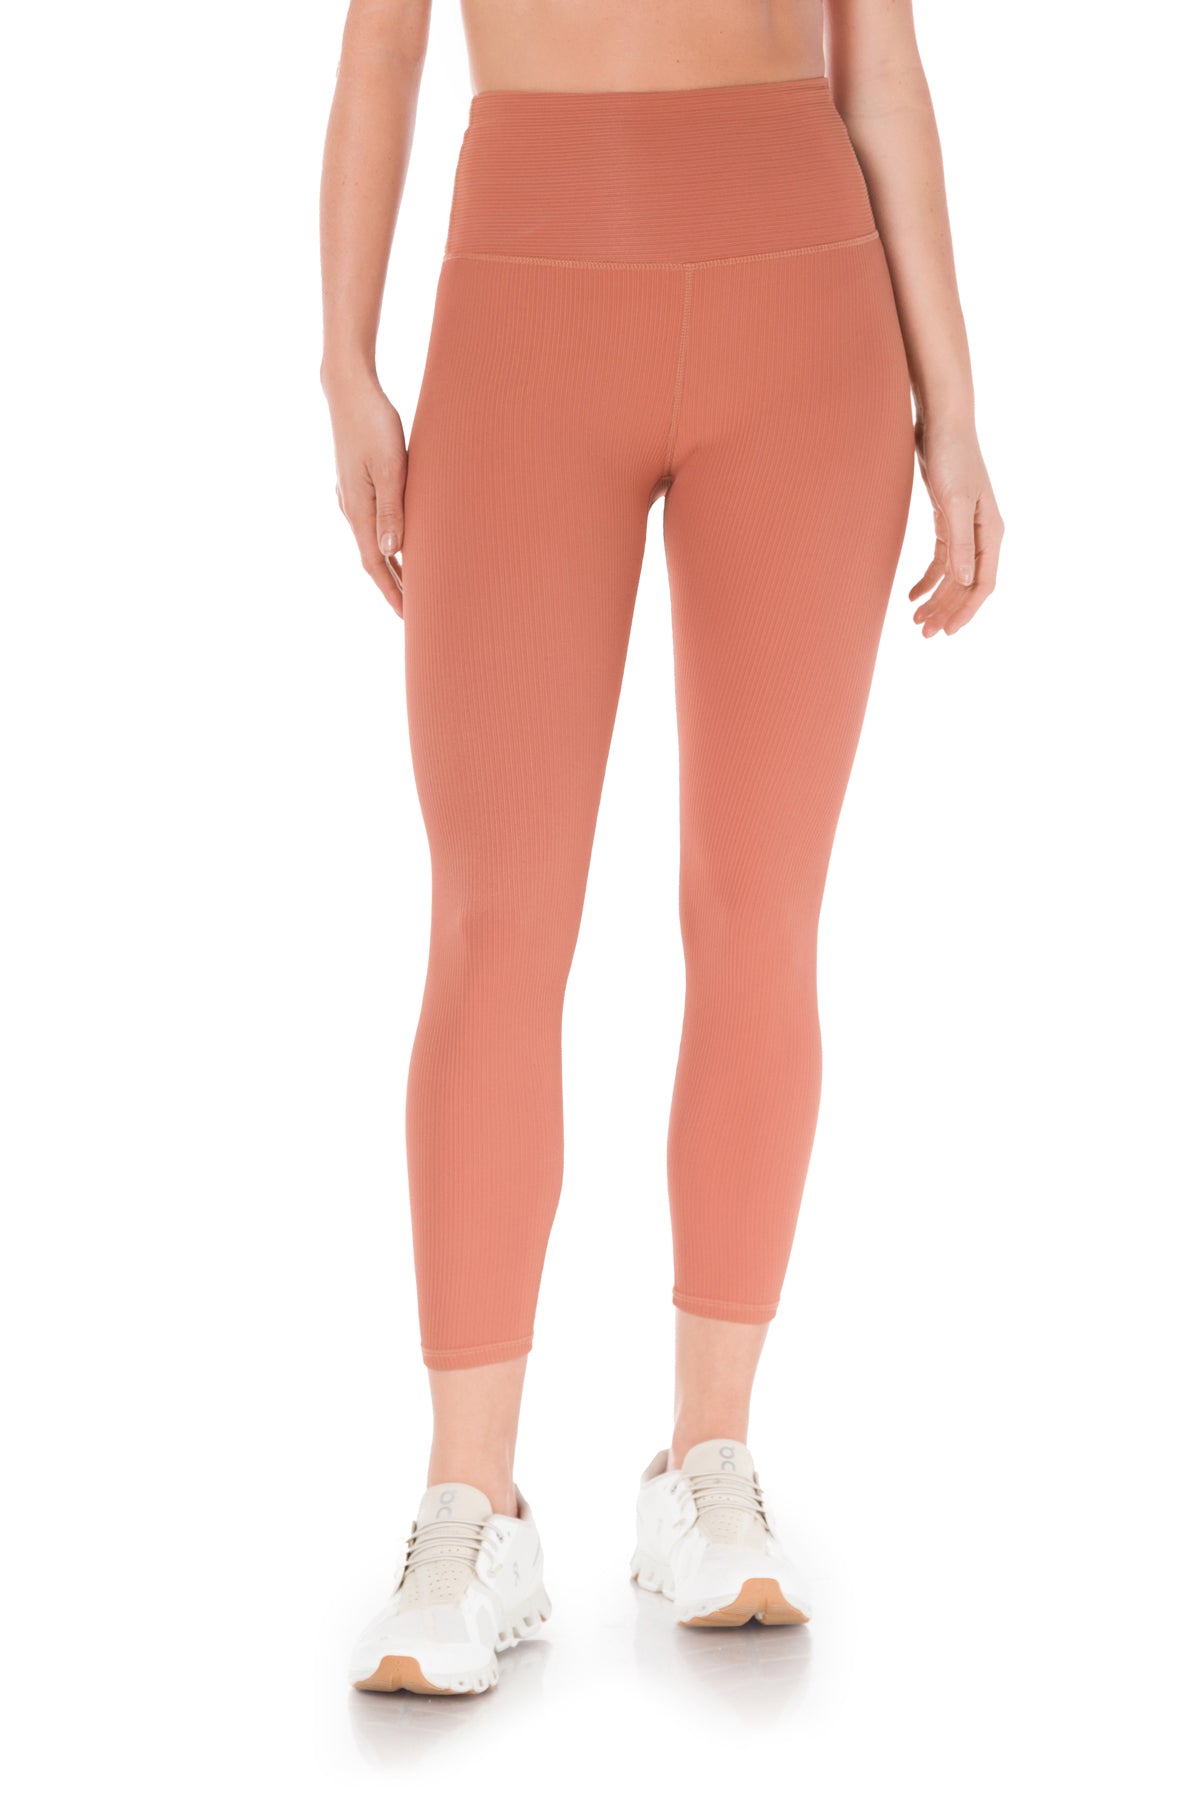 KYODAN Women Leggings Pink Gray Floral Yoga Pants XS SMALL